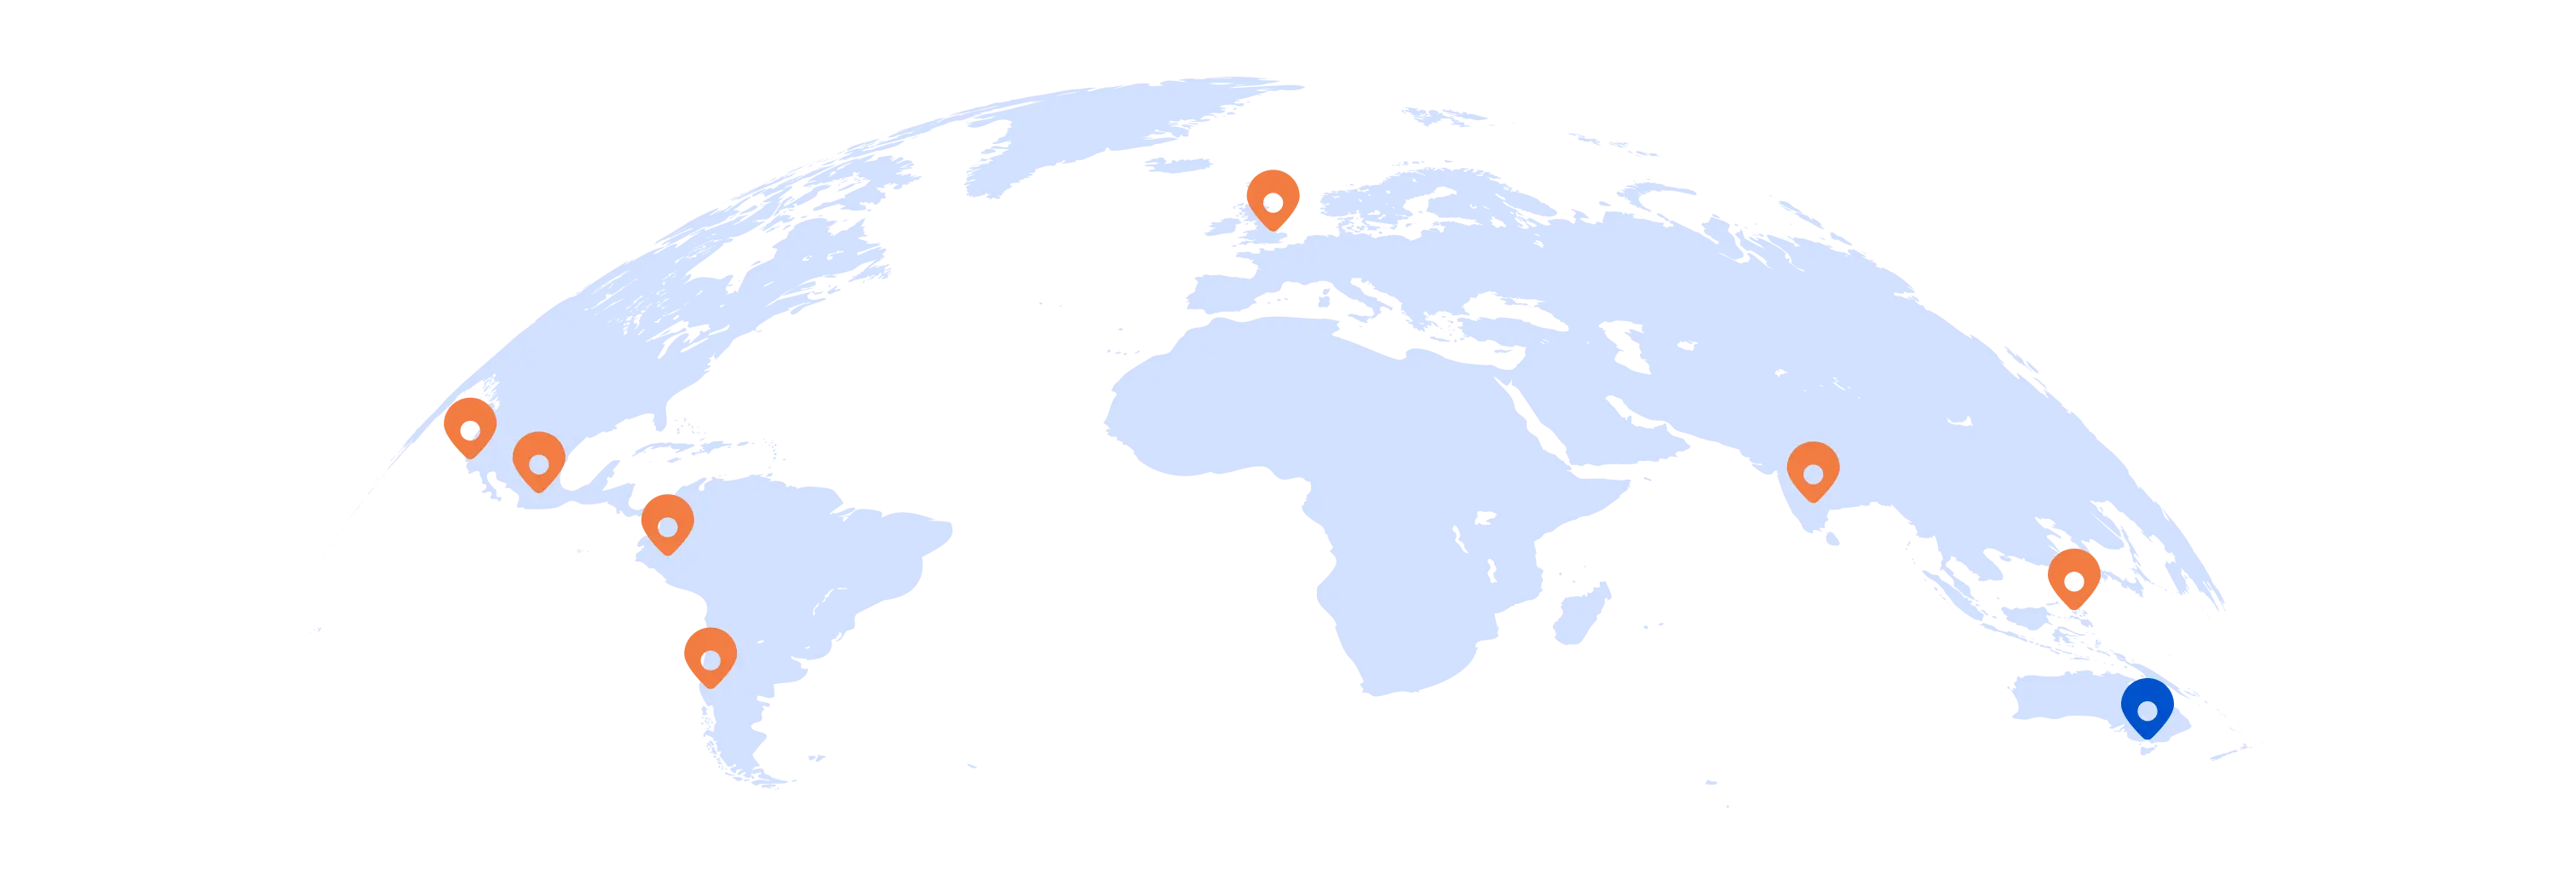 map_AUS